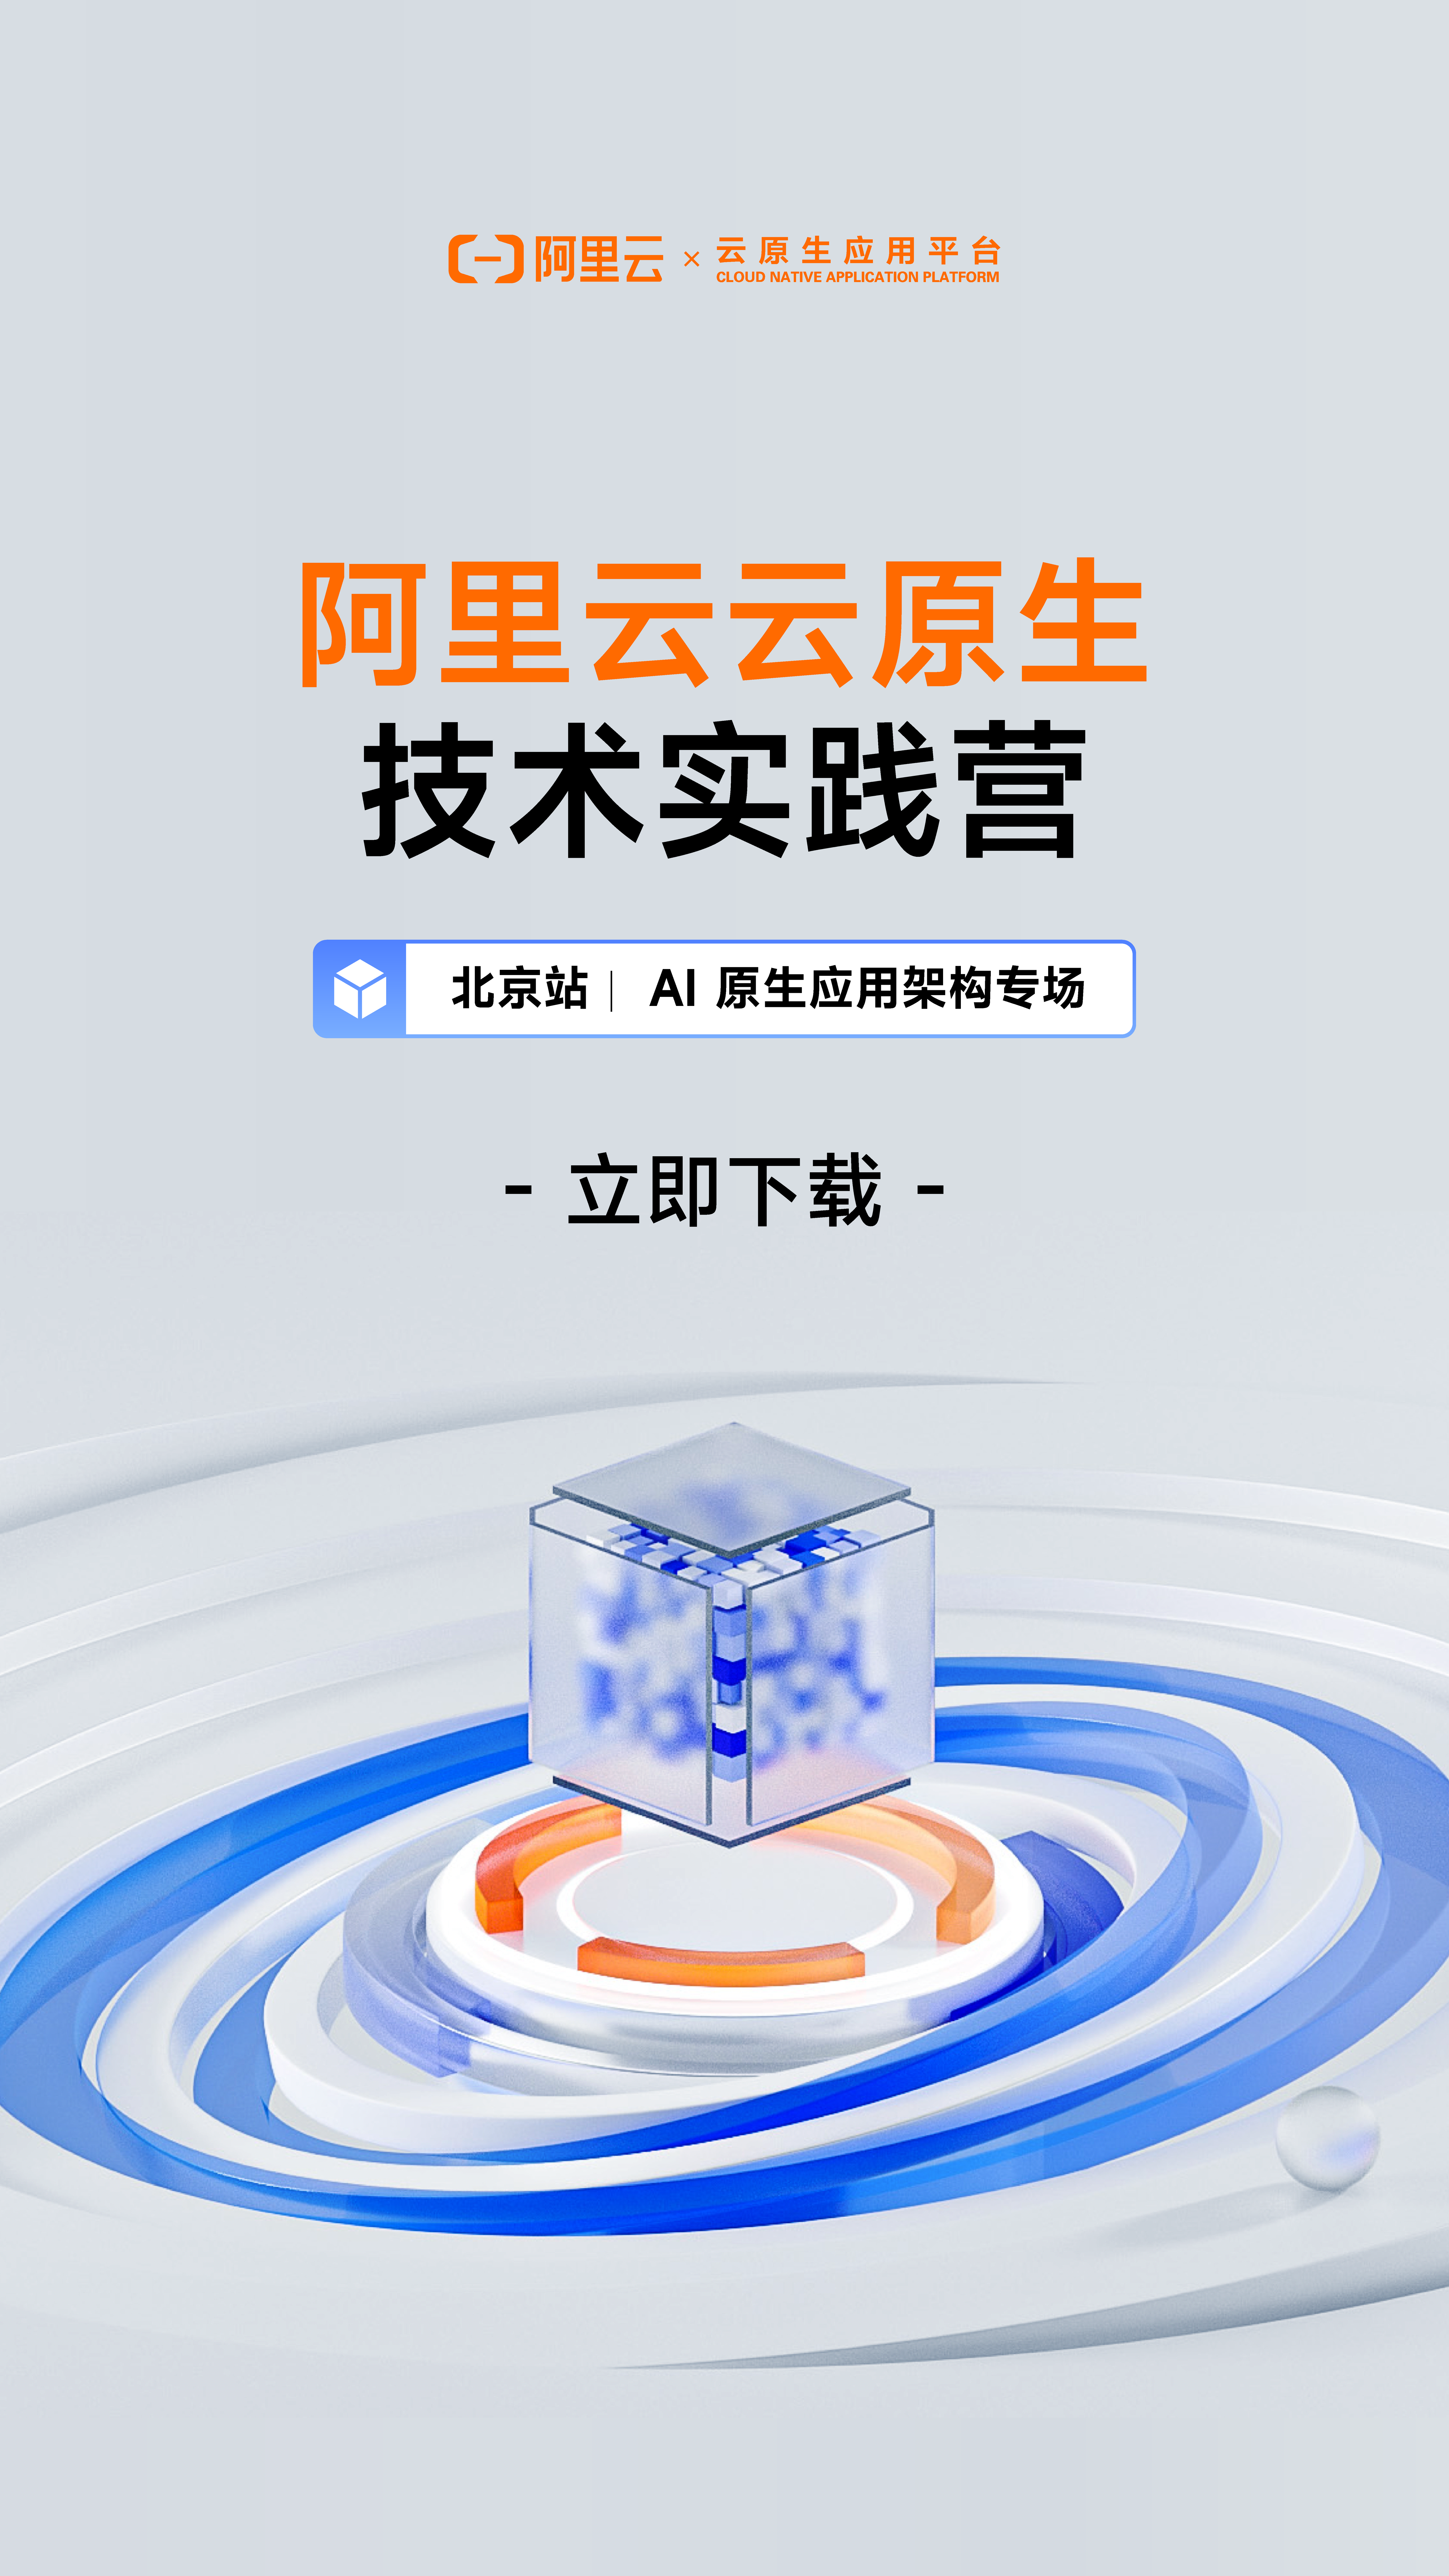 阿里云云原生技术实践营 AI 原生应用架构专场·北京站